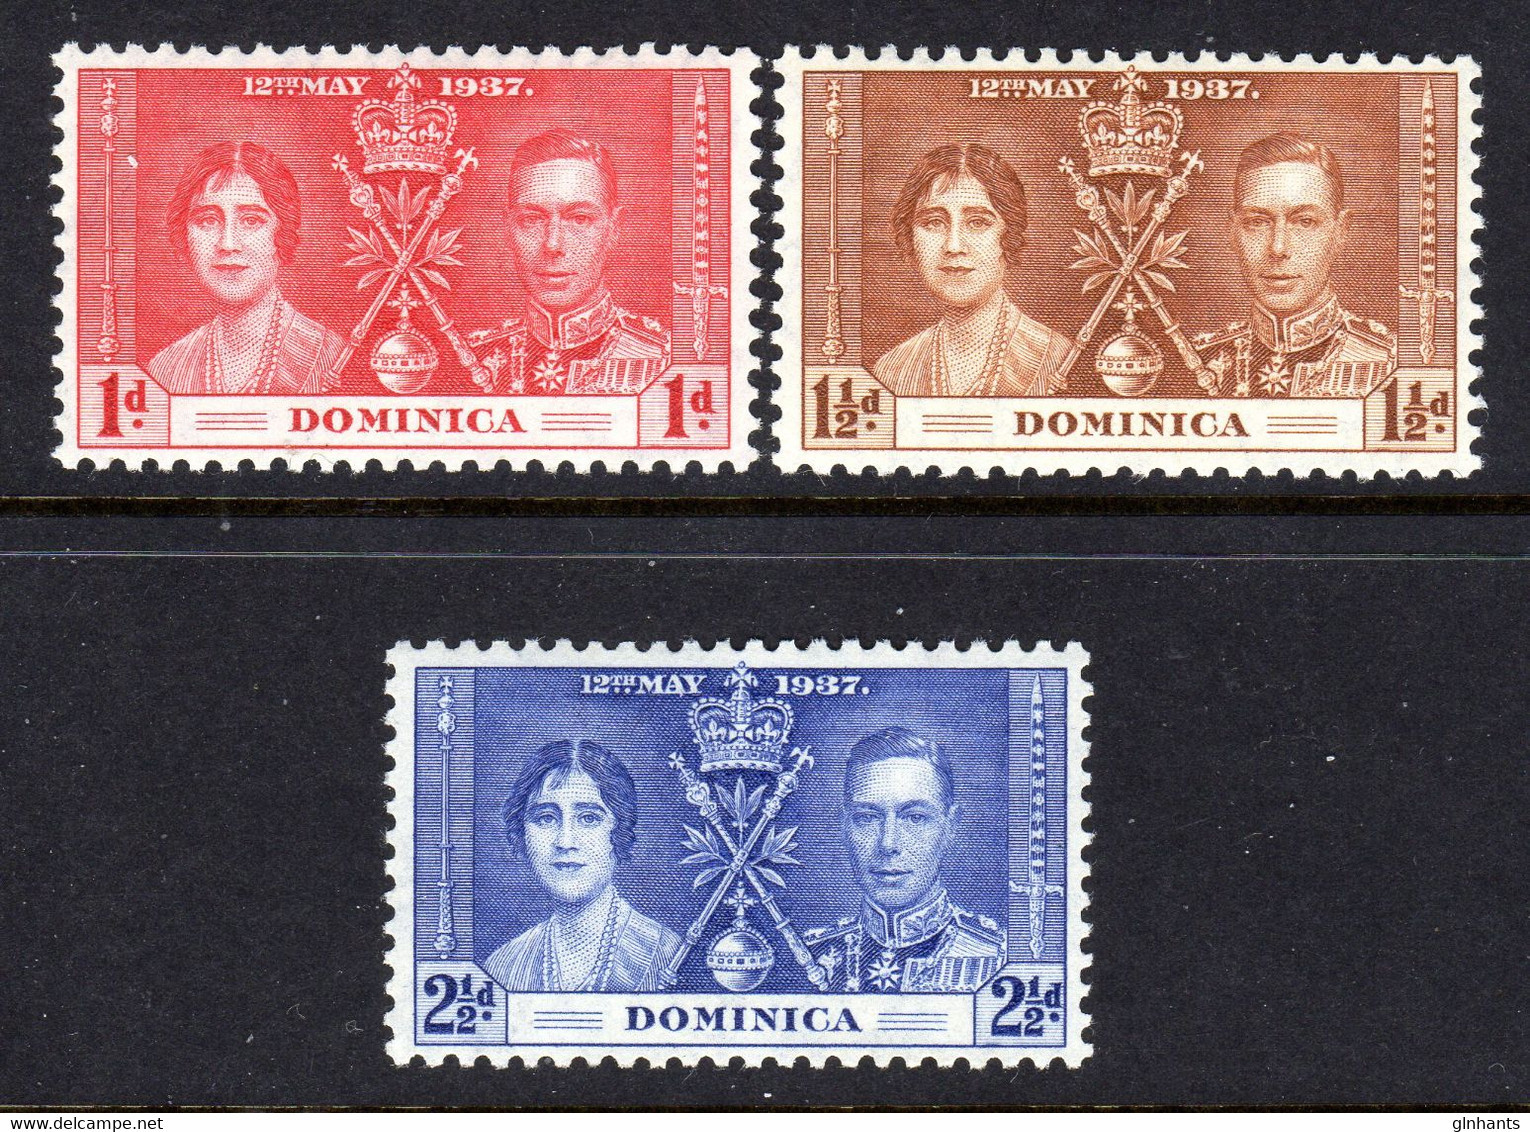 DOMINICA - 1937 CORONATION SET (3V) FINE MNH ** SG 96-98 - Dominica (...-1978)